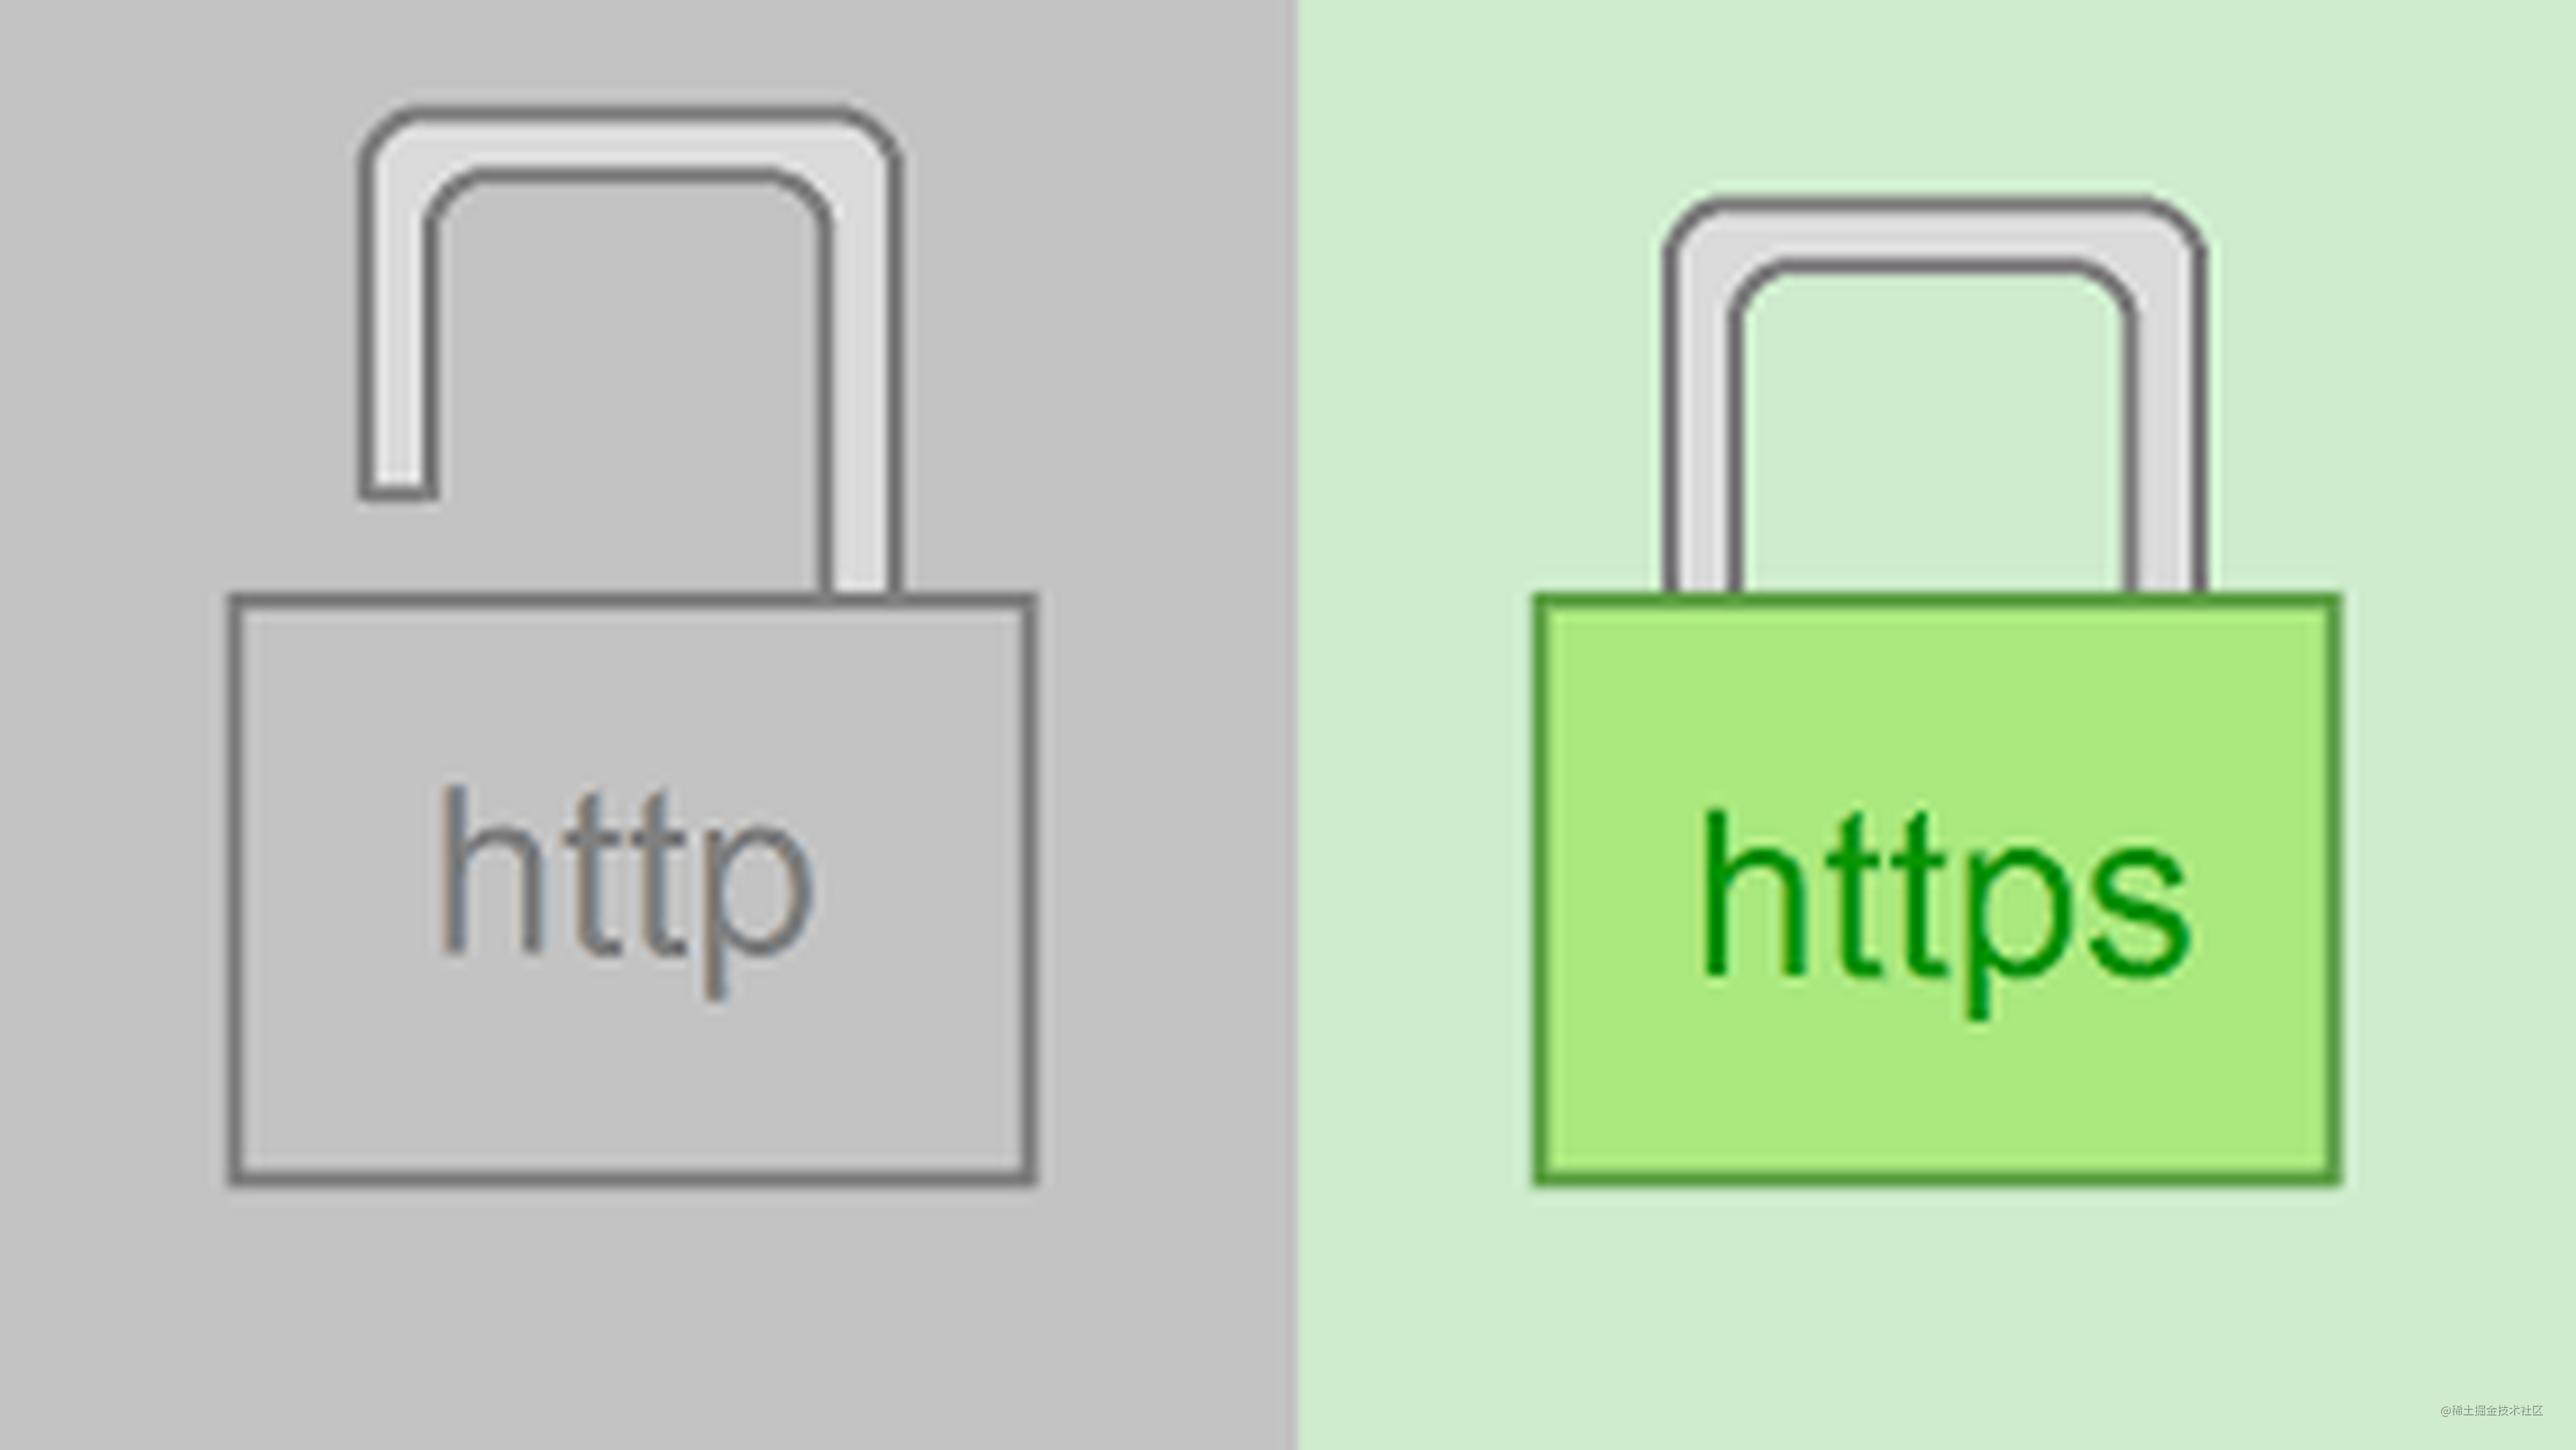 详细解析 HTTP 与 HTTPS 的区别